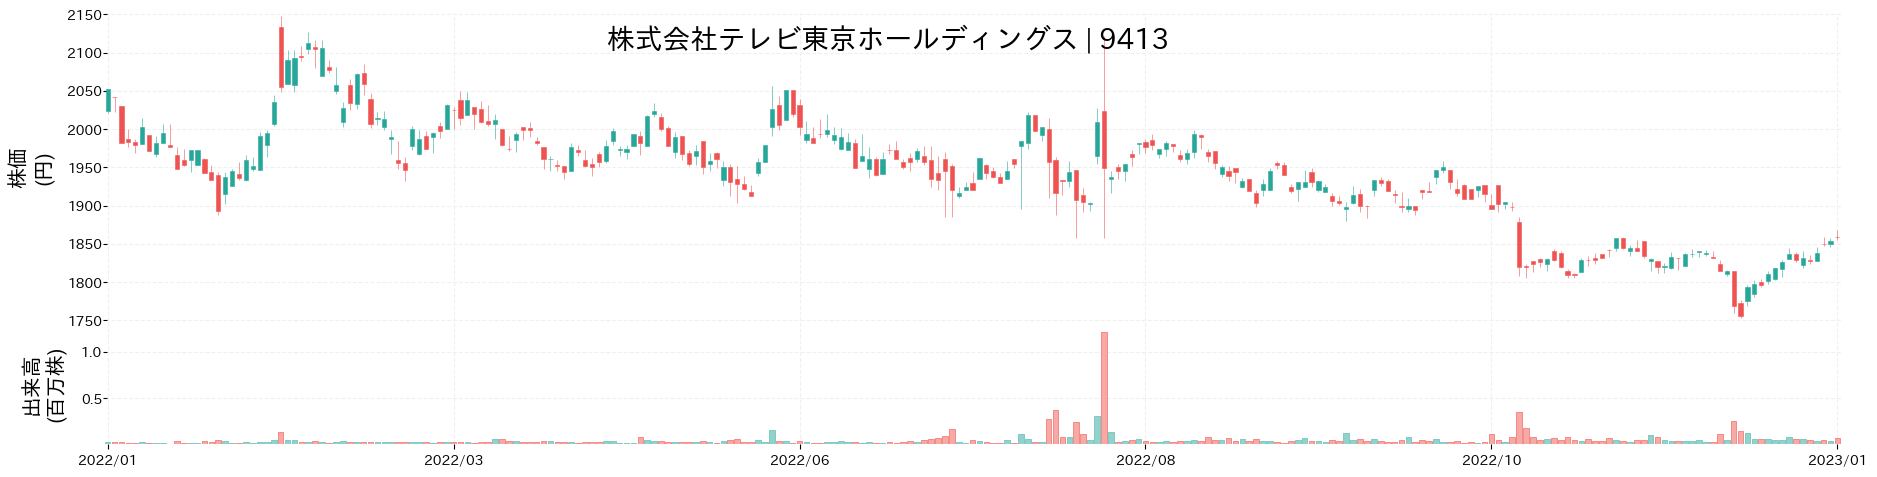 テレビ東京ホールディングスの株価推移(2022)